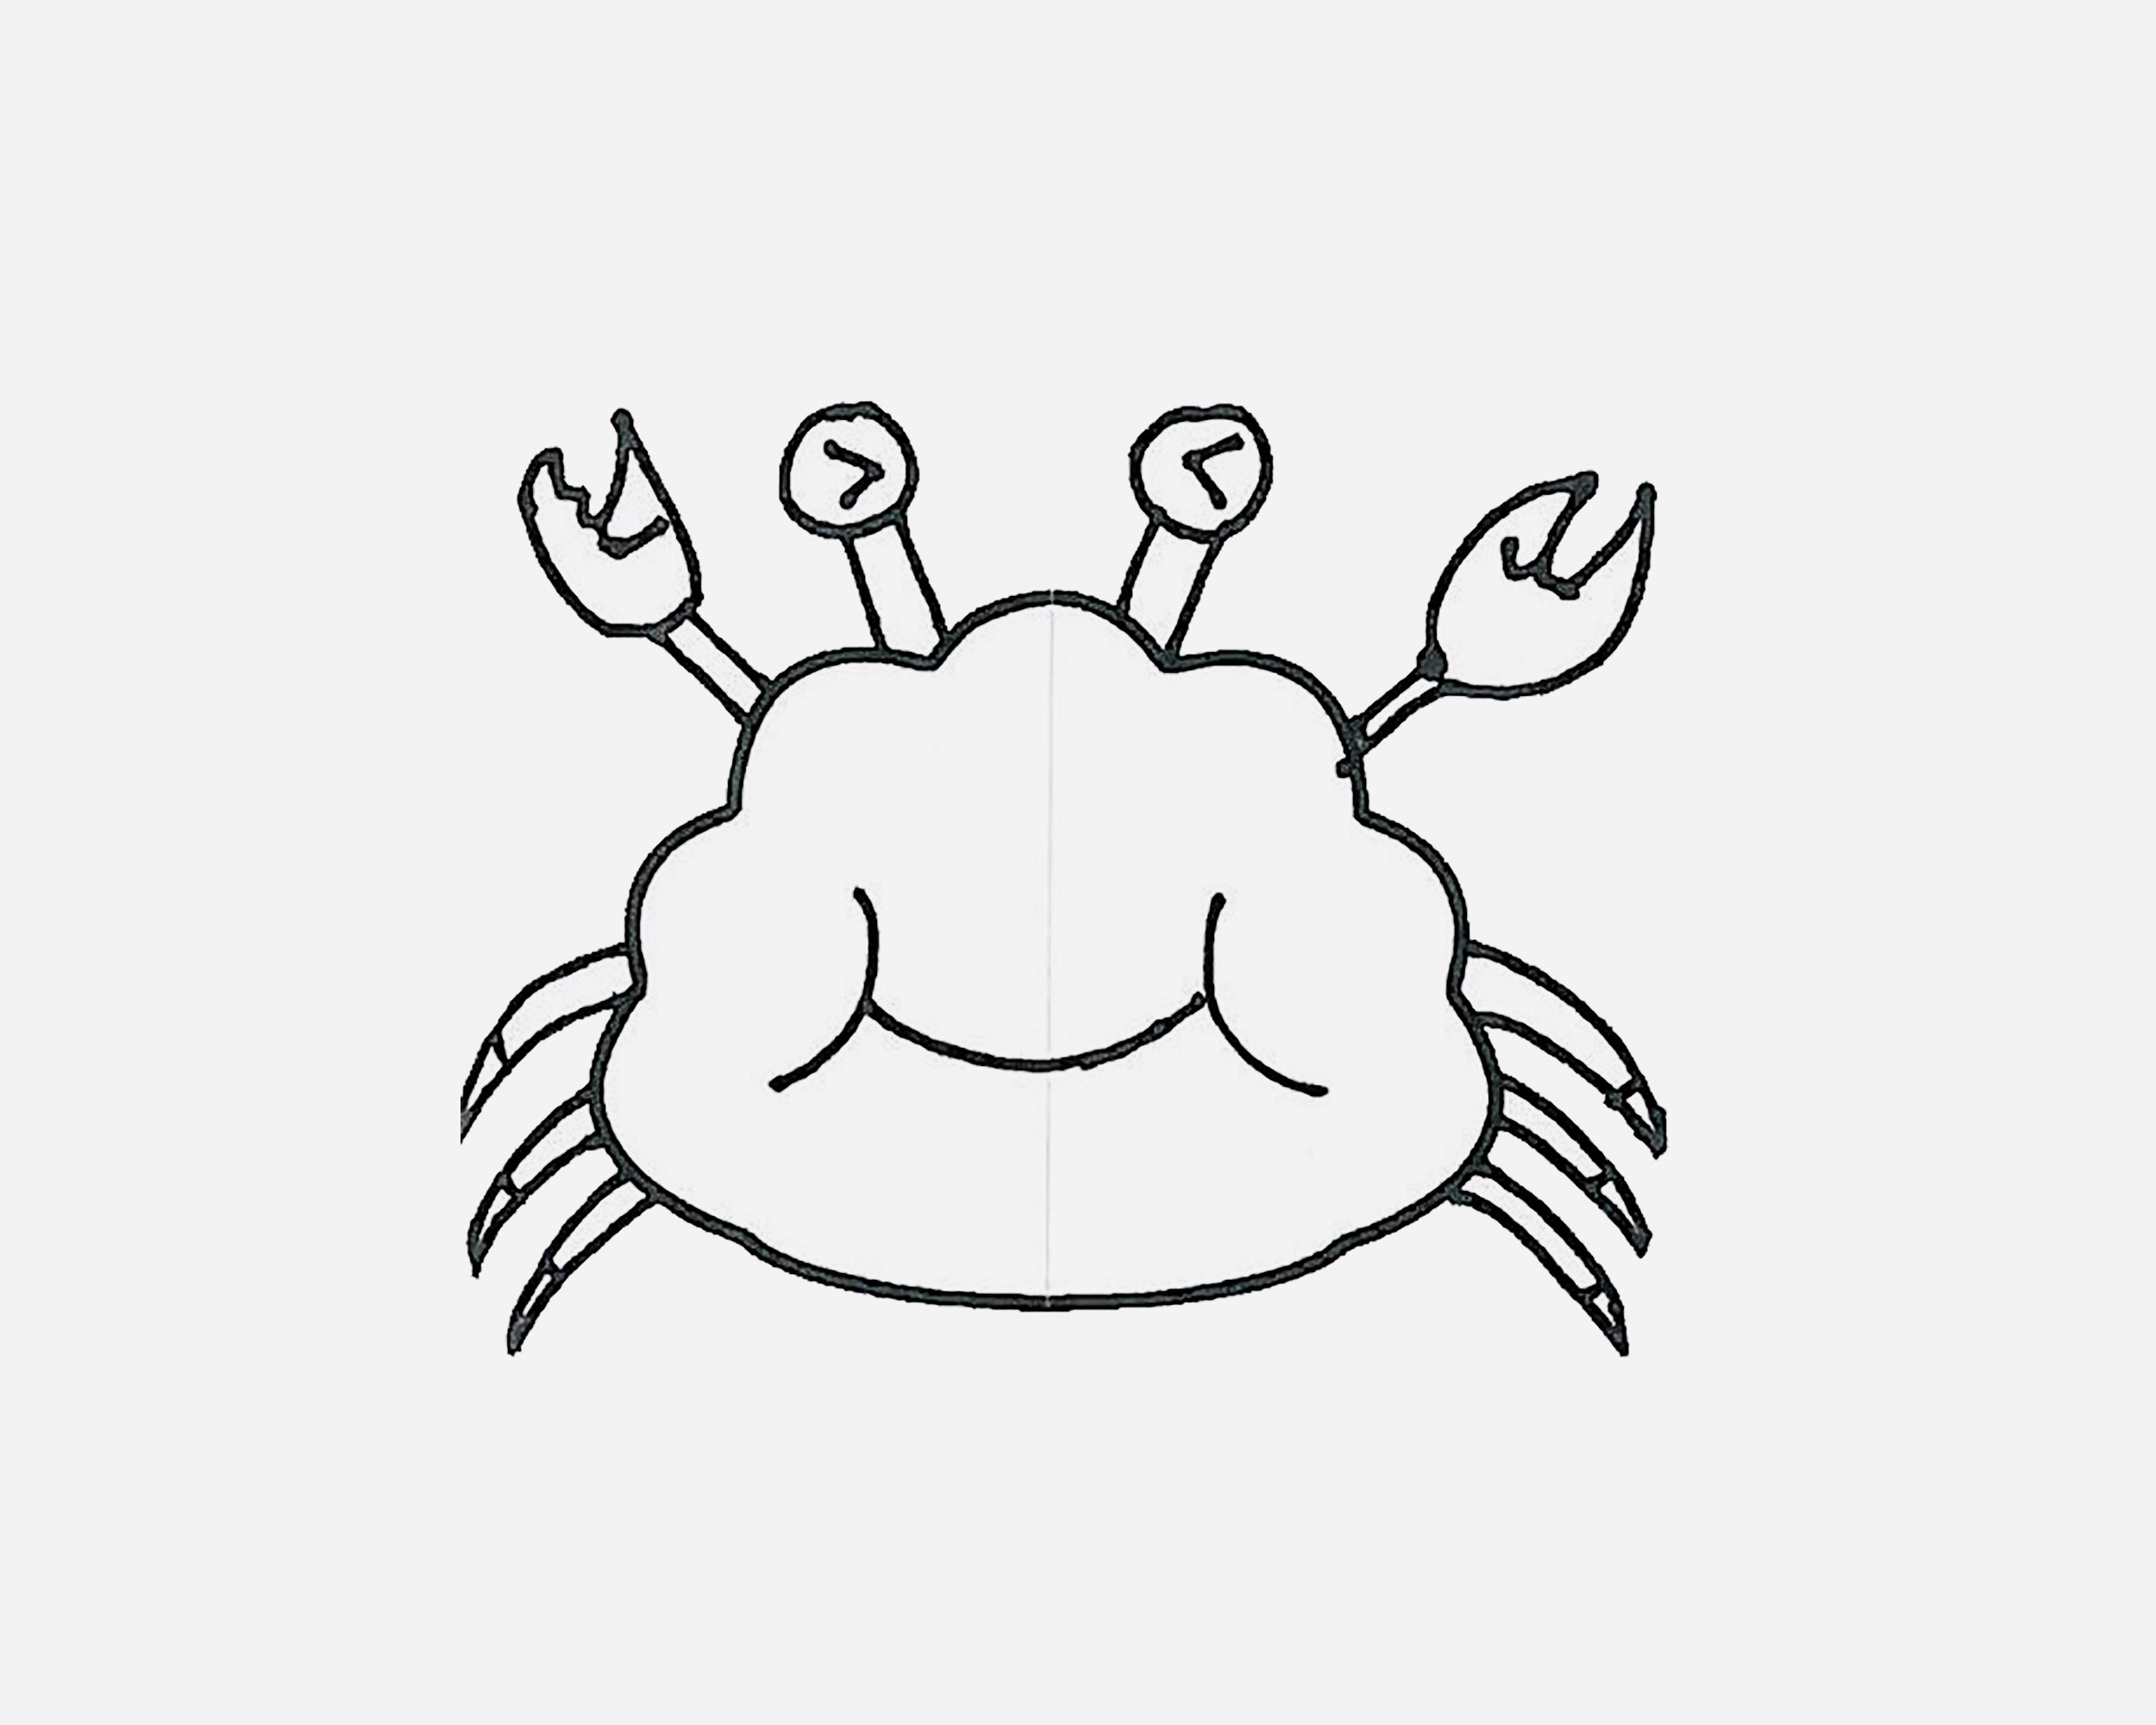 幼儿简单漂亮美术 好看简笔画螃蟹怎么画过程图💛巧艺网